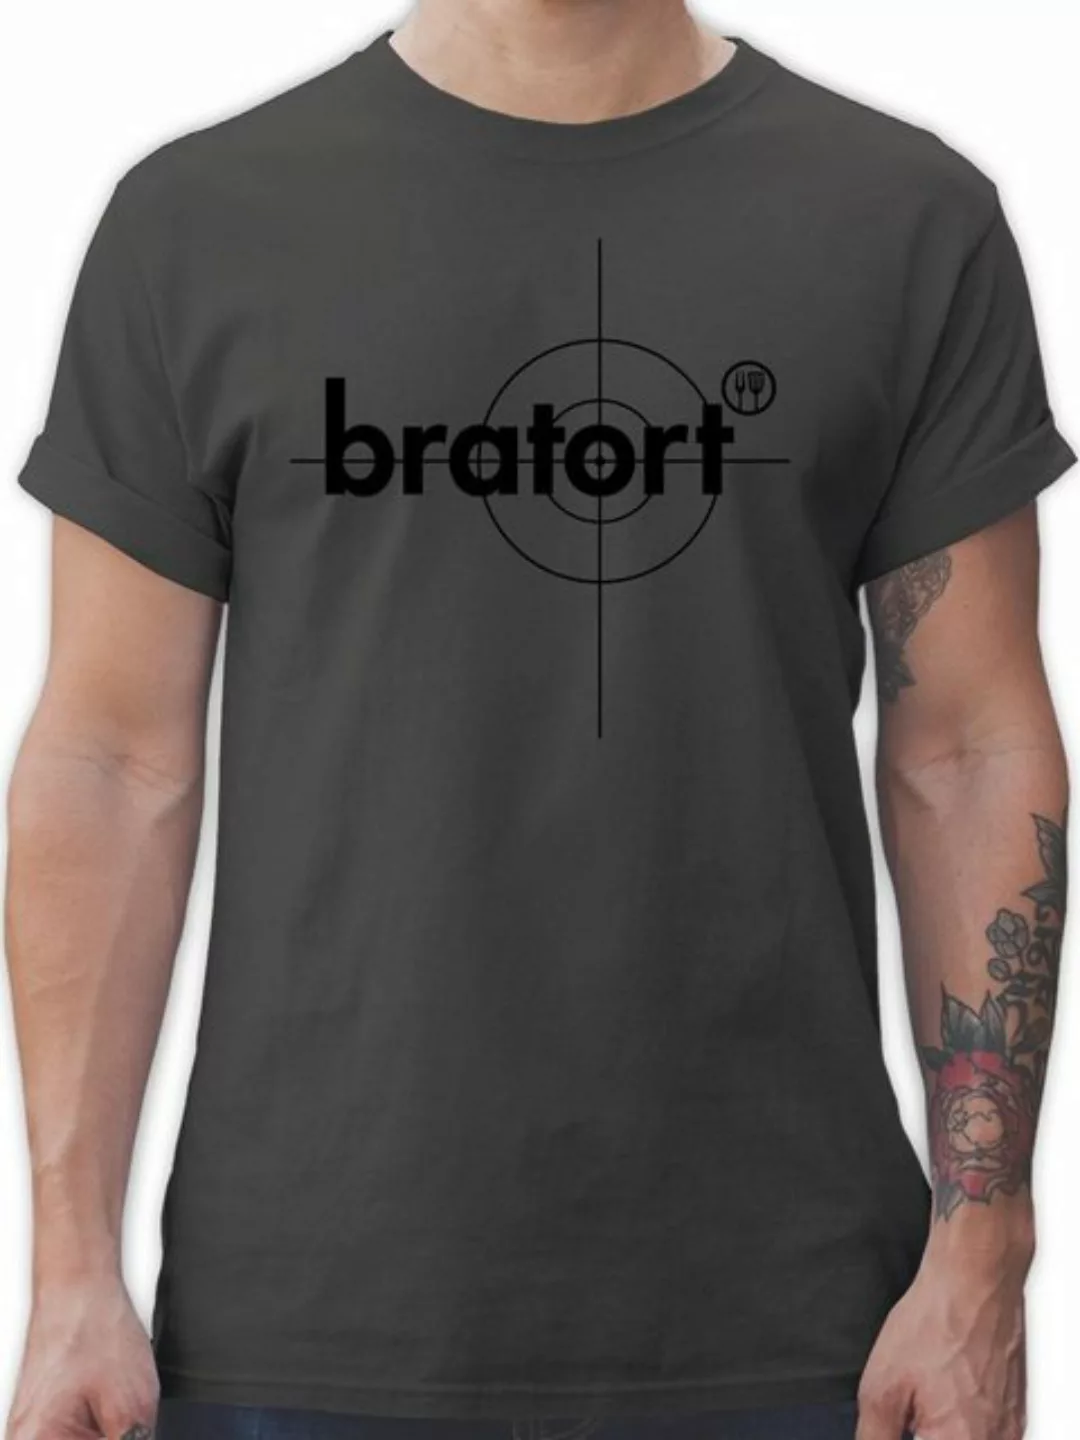 Shirtracer T-Shirt Bratort Grillzubehör & Grillen Geschenk günstig online kaufen